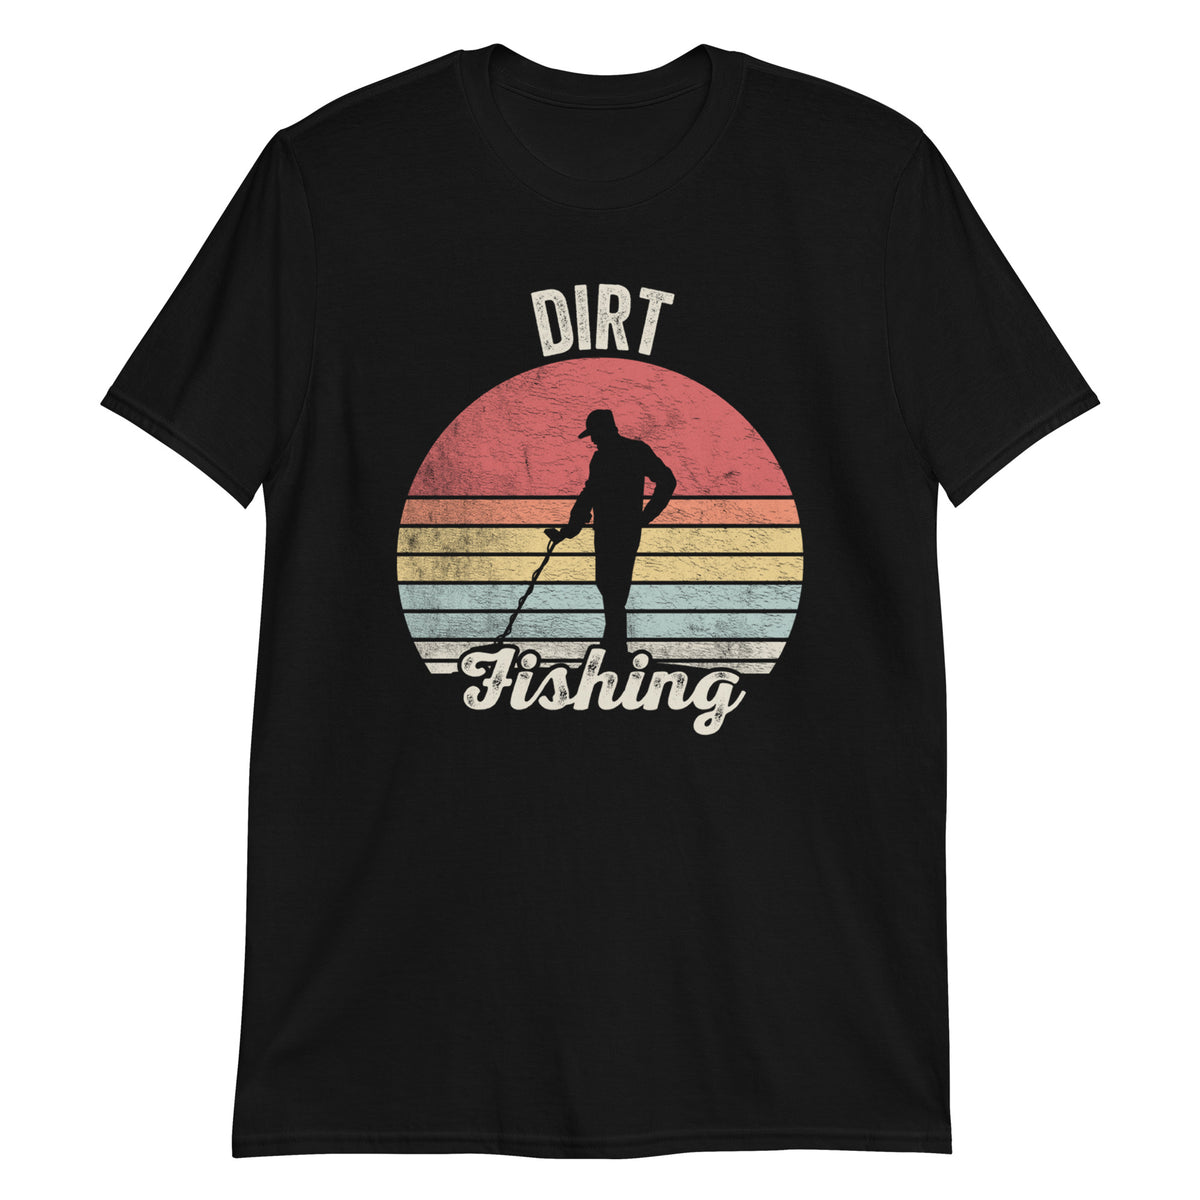 Dirt Fishing Metal Detecting Treasure Hunting Detectorist T-Shirt